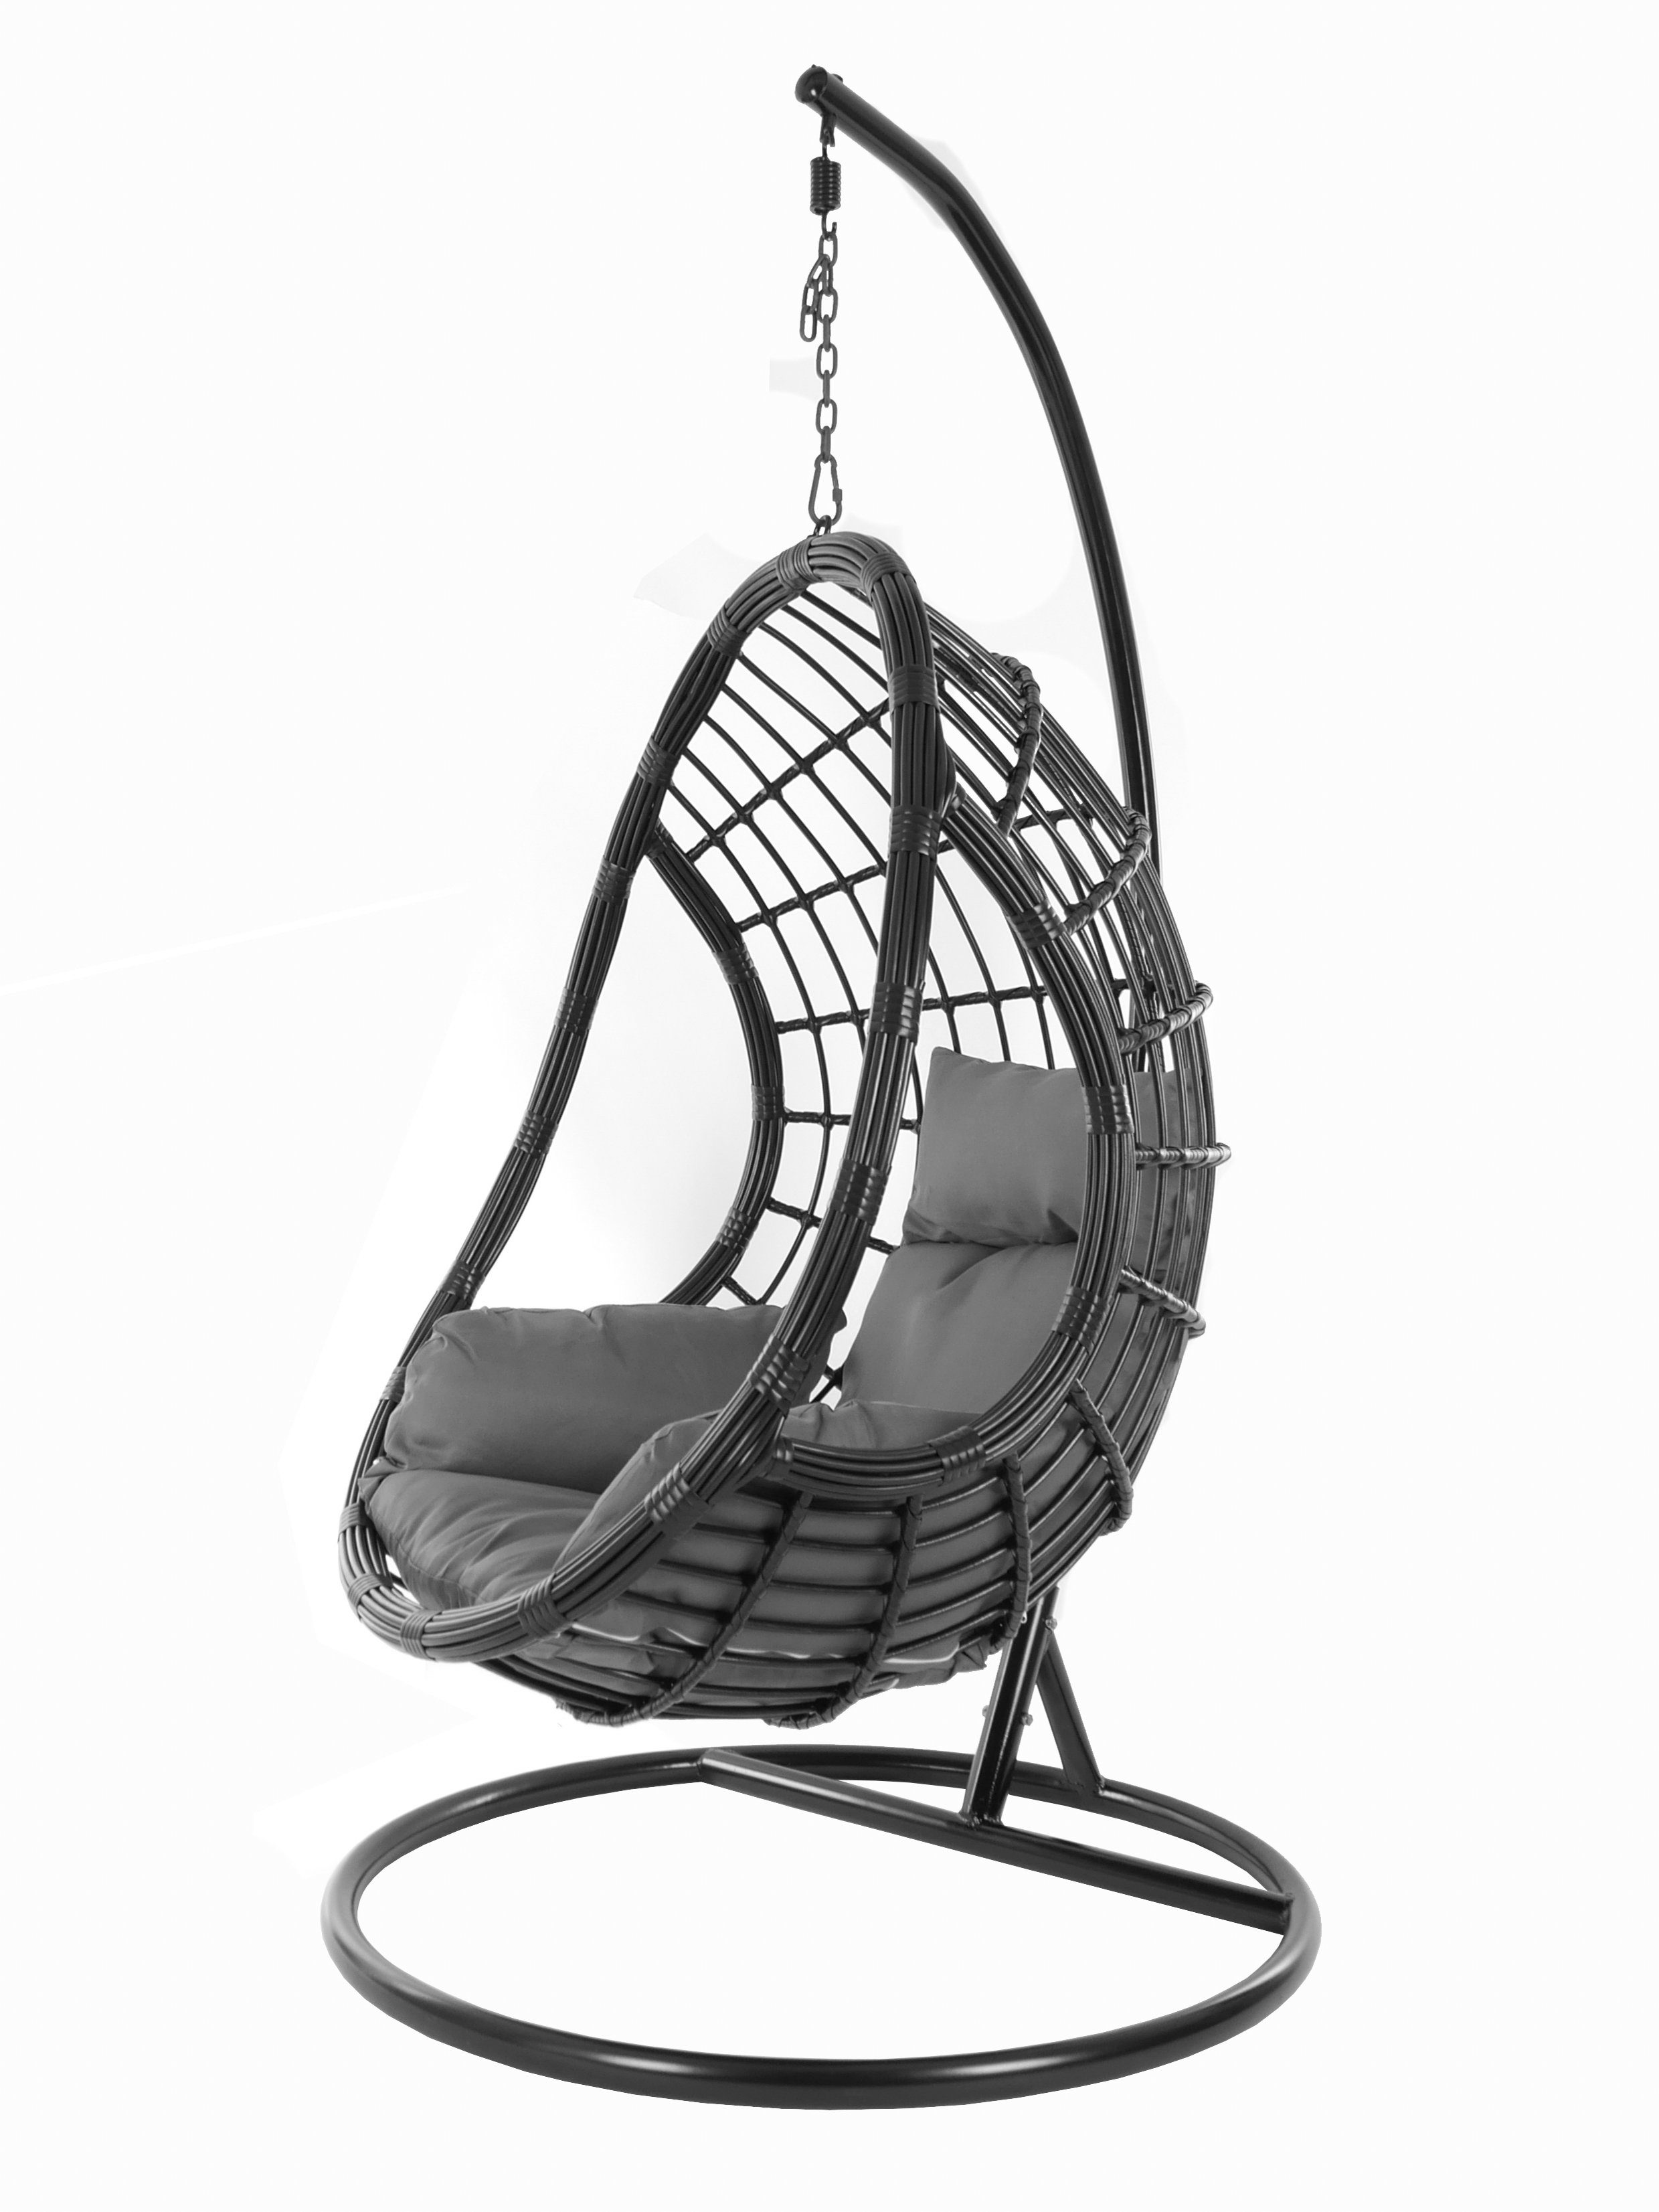 KIDEO Hängesessel PALMANOVA black, Schwebesessel, Swing Chair, Hängesessel mit Gestell und Kissen, Nest-Kissen dunkelgrau (8999 shadow)